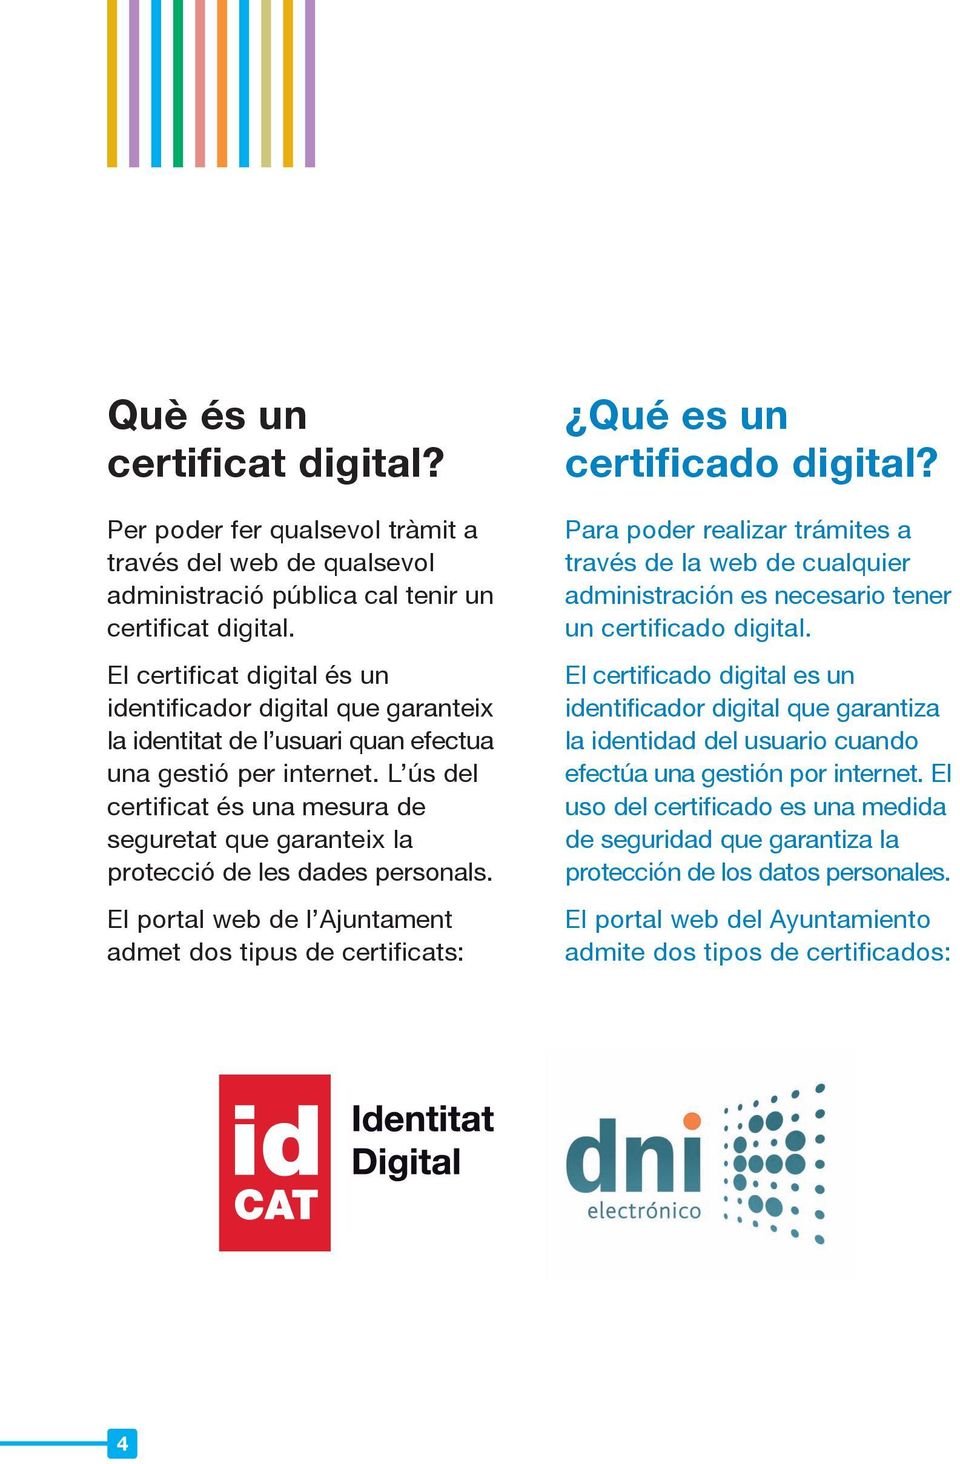 L ús del certificat és una mesura de seguretat que garanteix la protecció de les dades personals. El portal web de l Ajuntament admet dos tipus de certificats: Qué es un certificado digital?